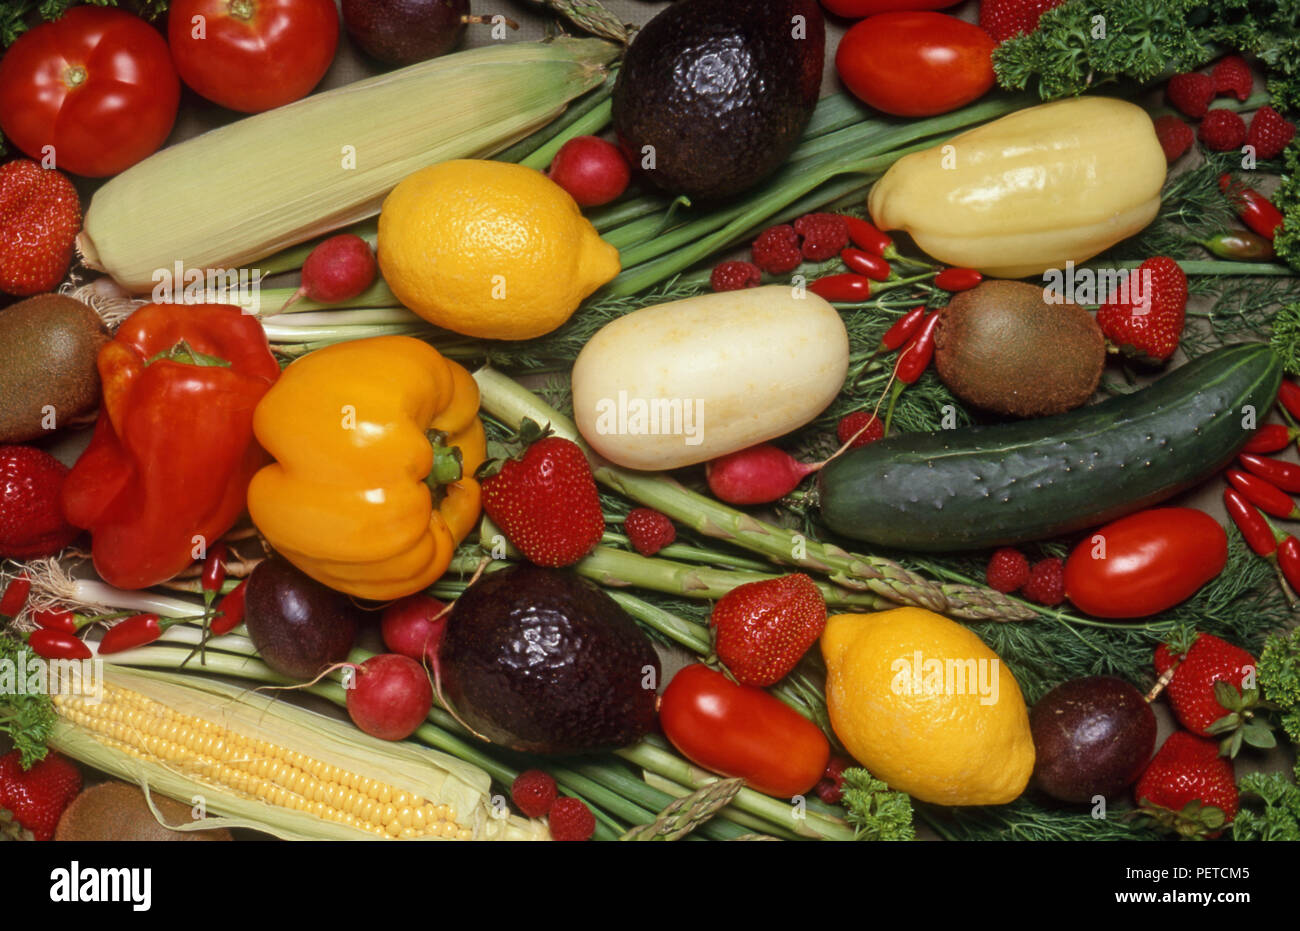 Disposizione mista di verdure fresche e frutta compresi peperoni, cetrioli, limoni, pomodori, mais, fragole, lamponi e avocado. Foto Stock